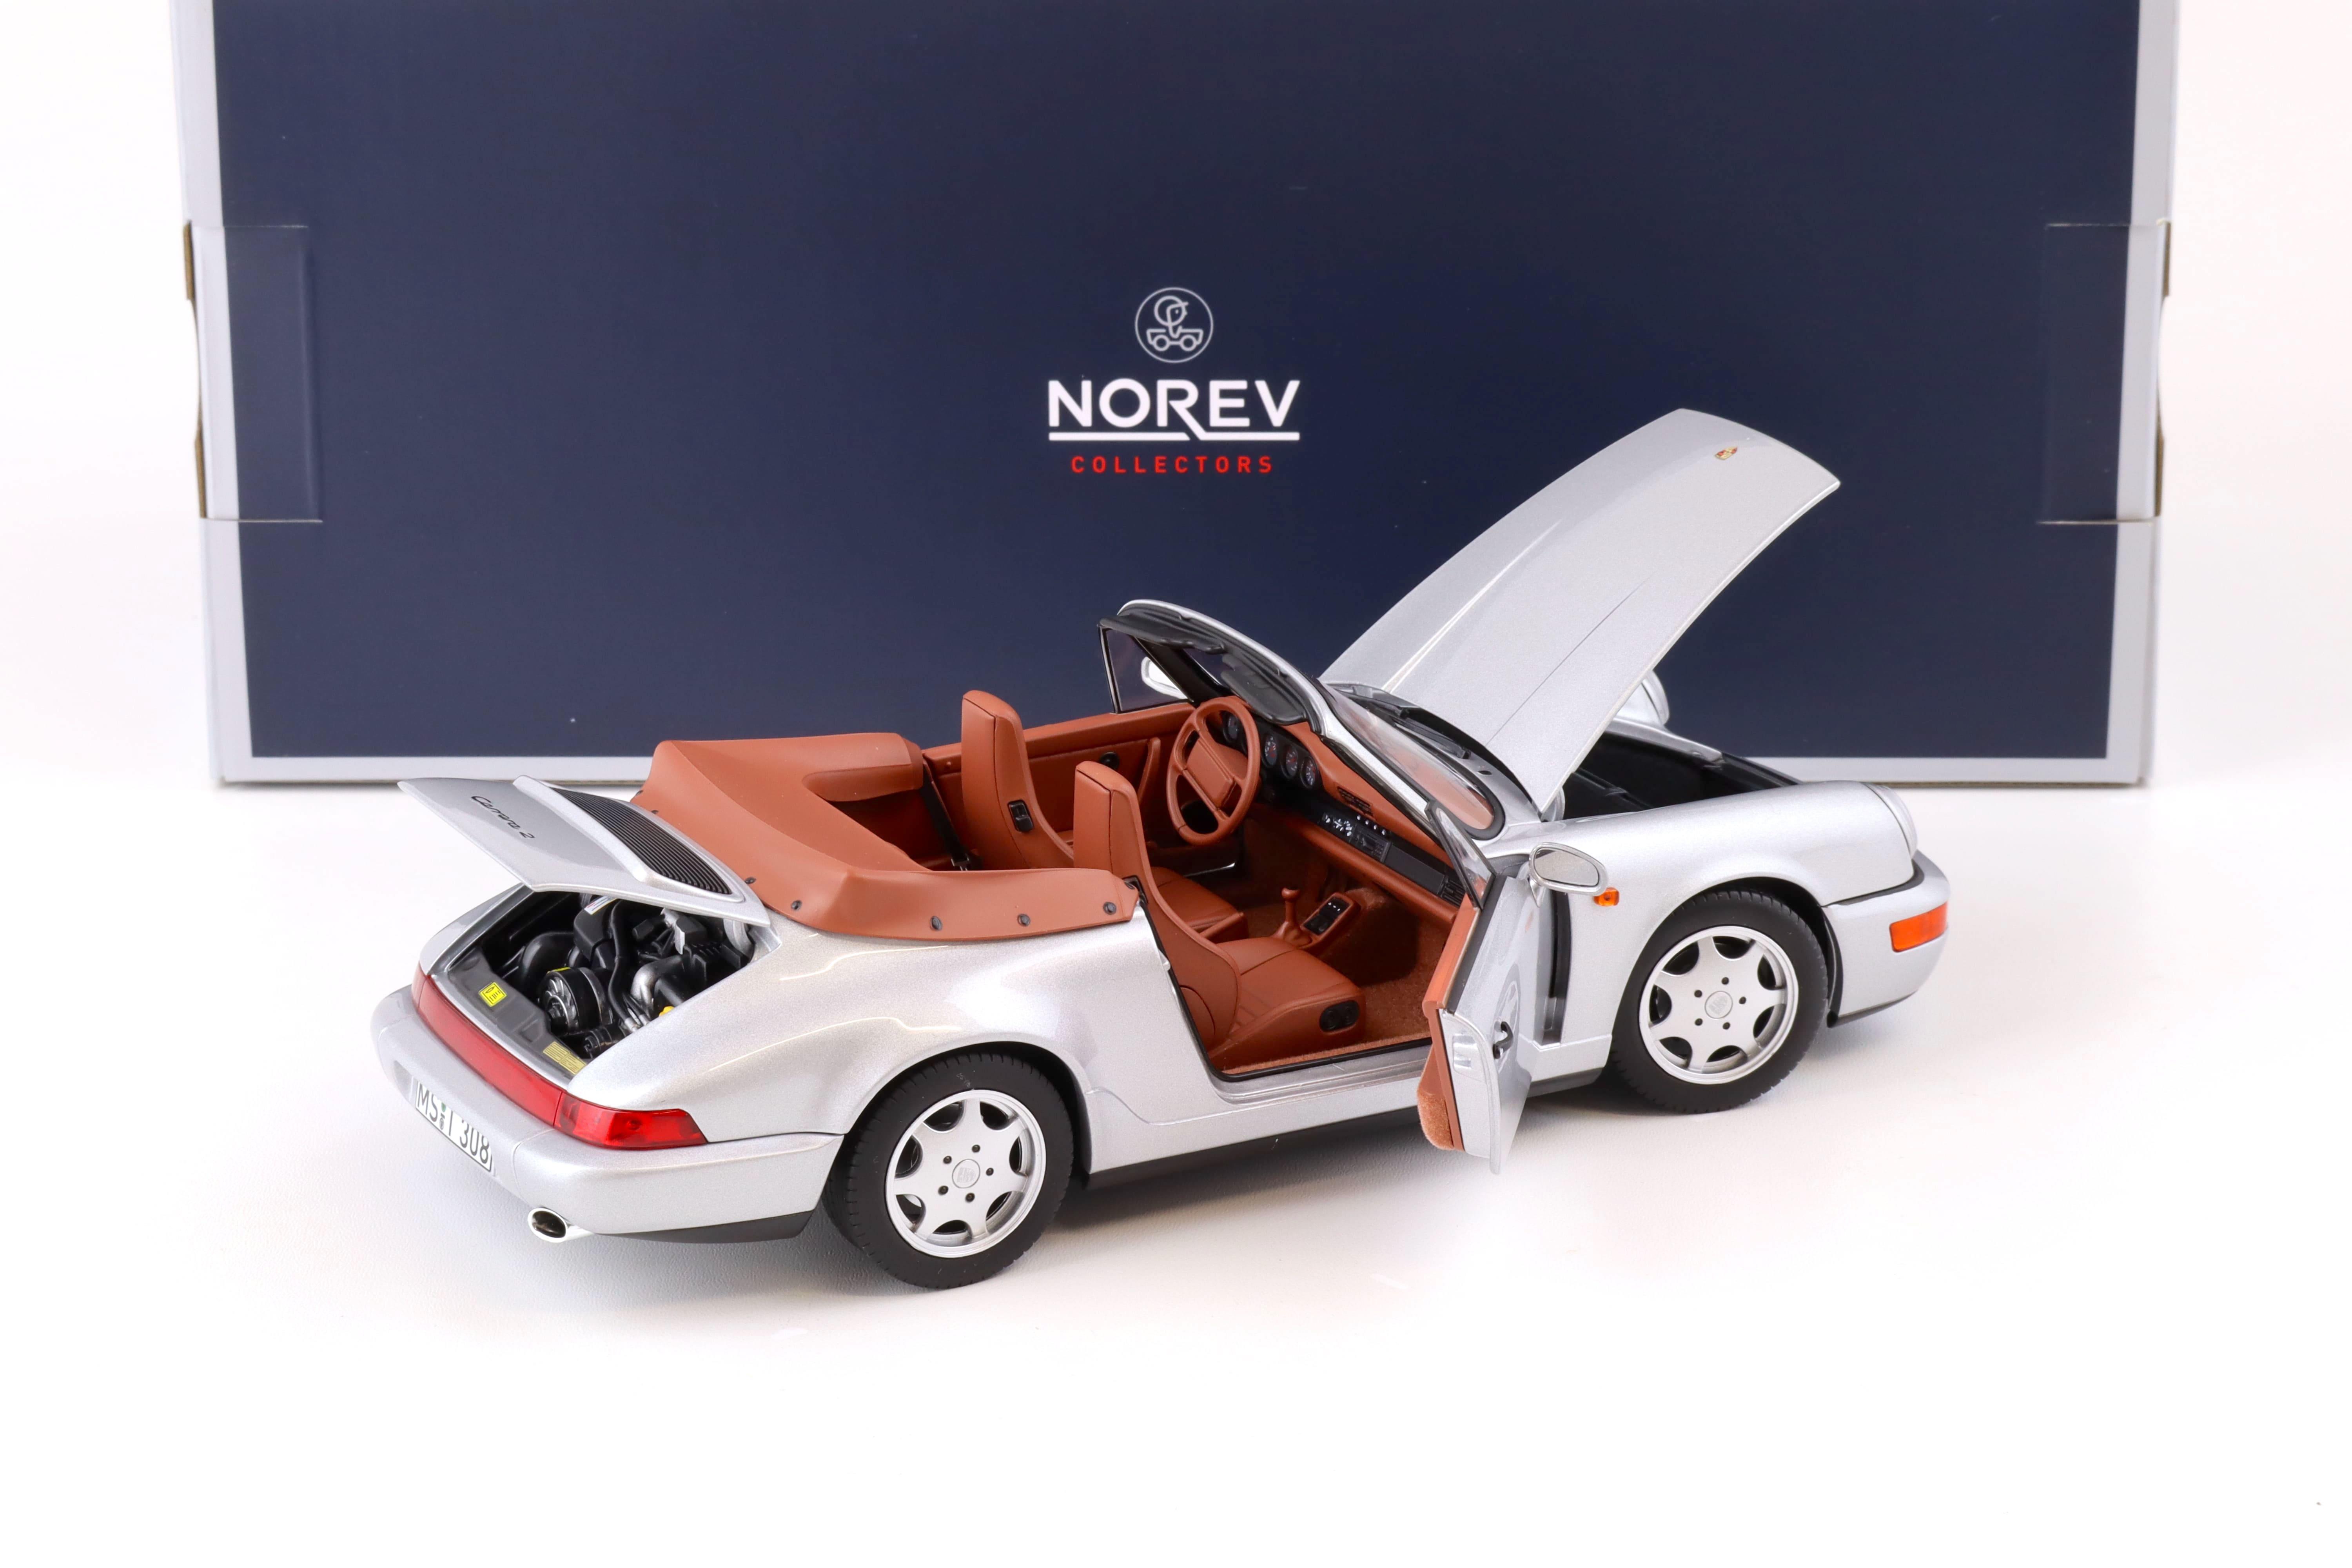 1:18 Norev Porsche 911 (964) Carrera 2 Cabriolet 1990 silver 187330